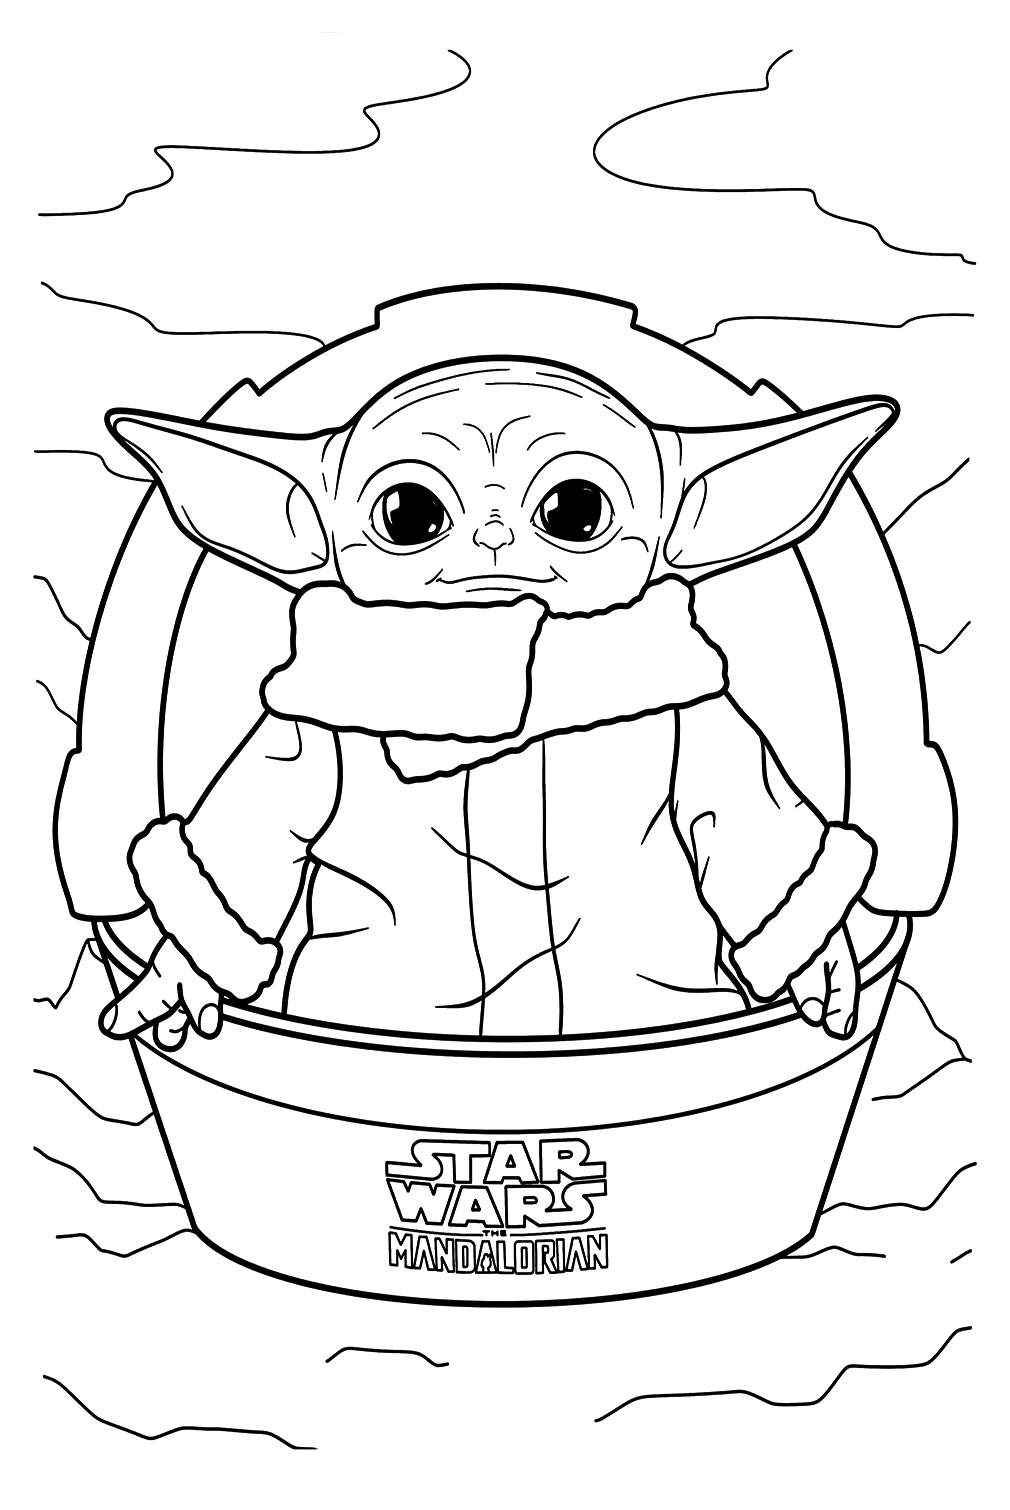 Image à colorier de bébé Yoda